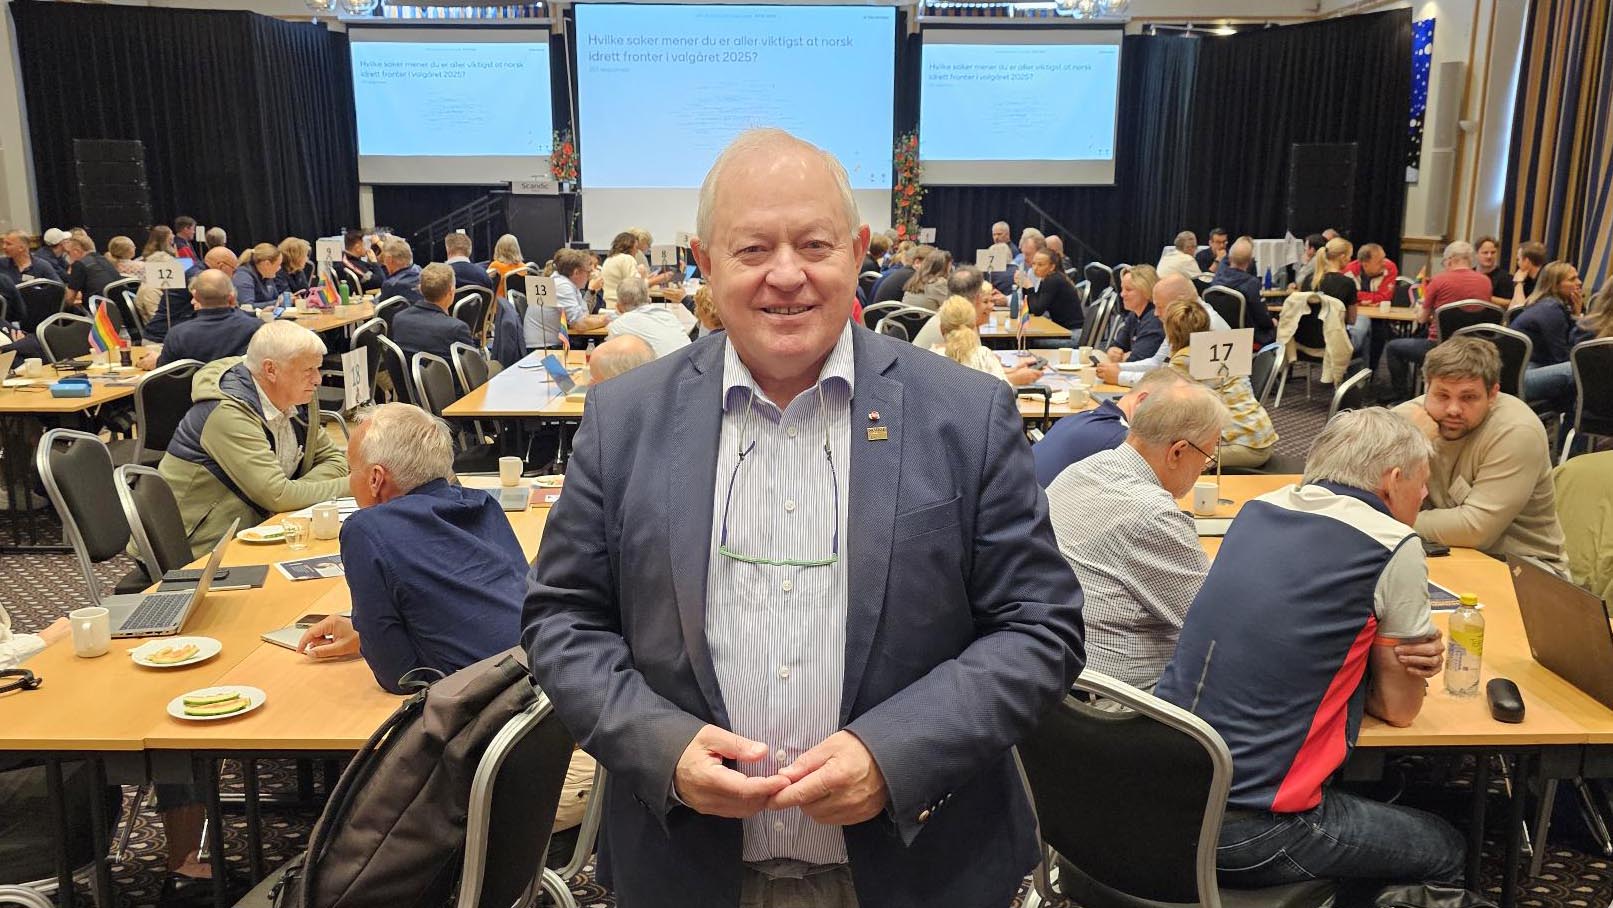 Konstituert idrettspresident, Arne Bård Dalhaug, var en av mange idrettsledere som hadde tatt turen til Ledermøtet 2024 i Ålesund. Foto: Geir Owe Fredheim.